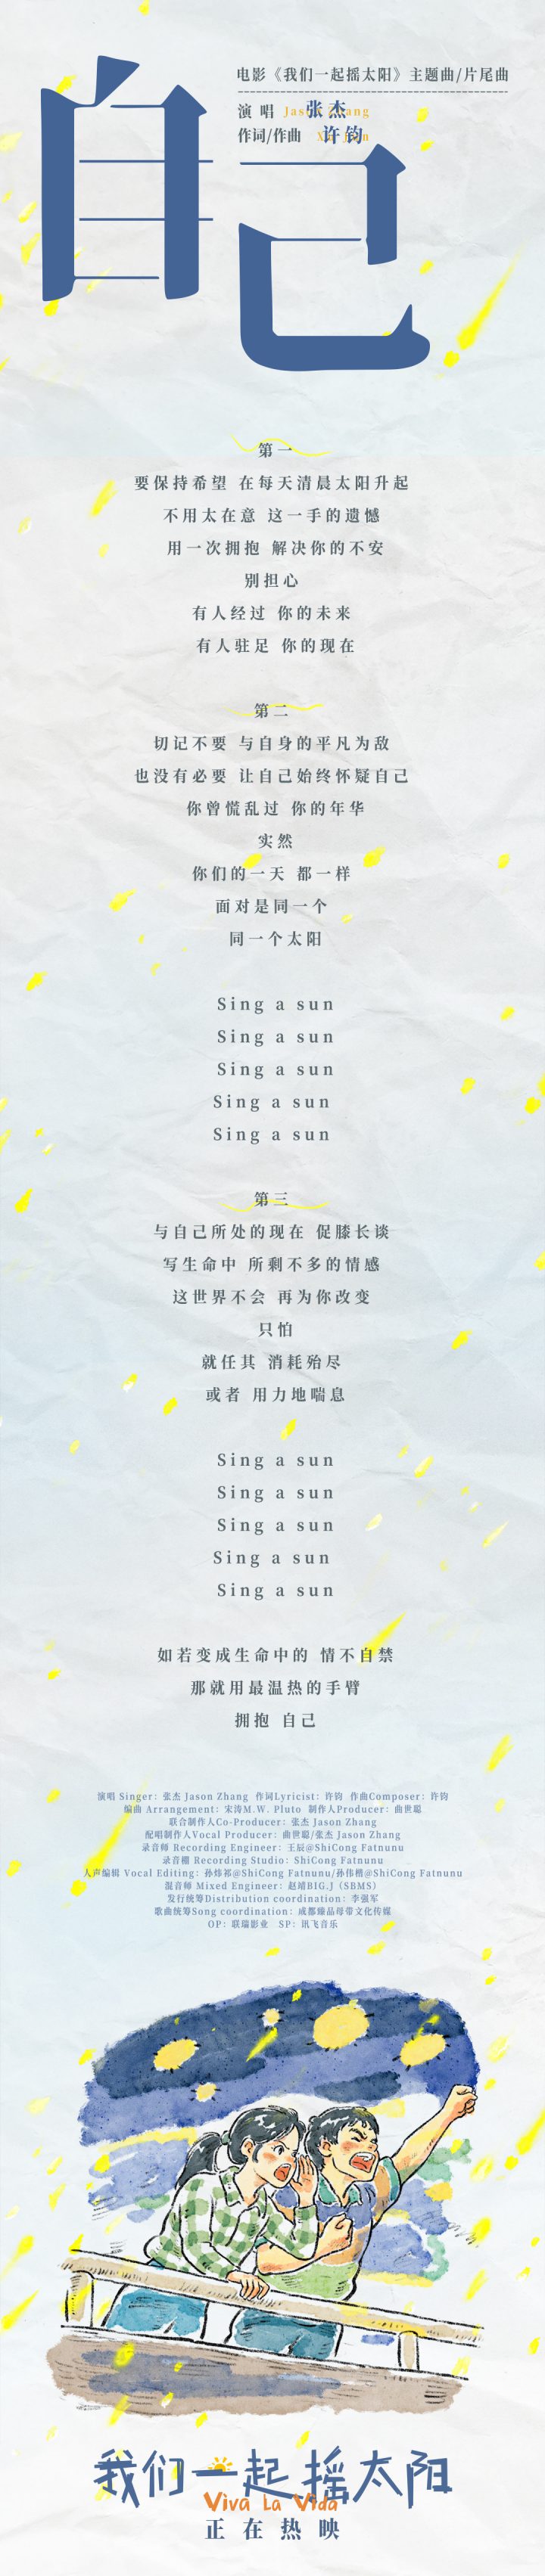 张杰演绎主题曲MV《我们一起摇太阳》，传递生活希望